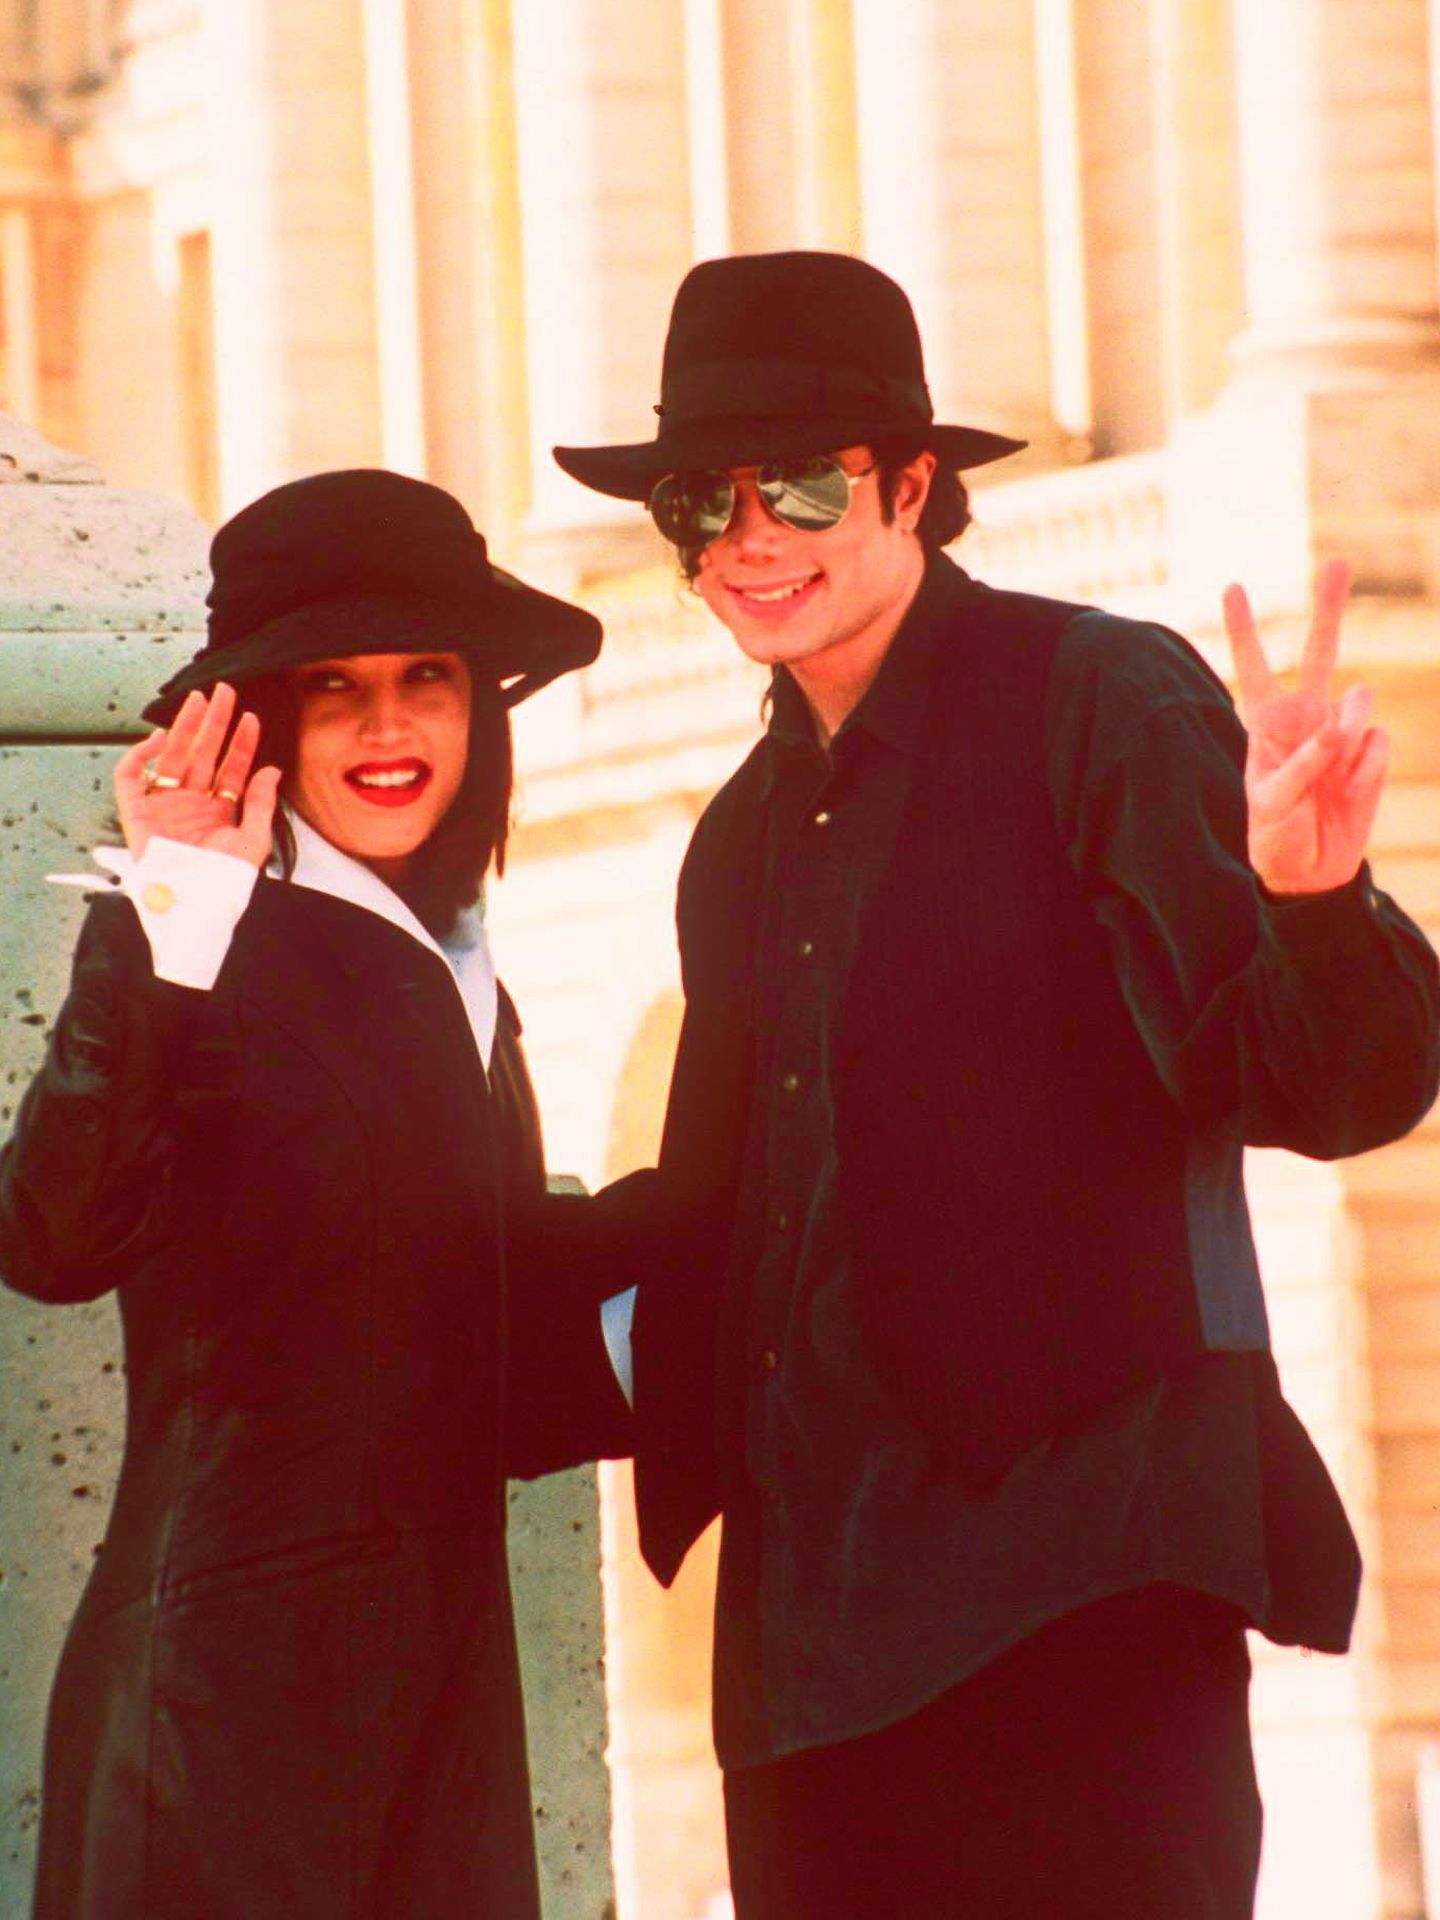 Jackson y Lisa Marie Presley, en una foto de archivo (Gtres)